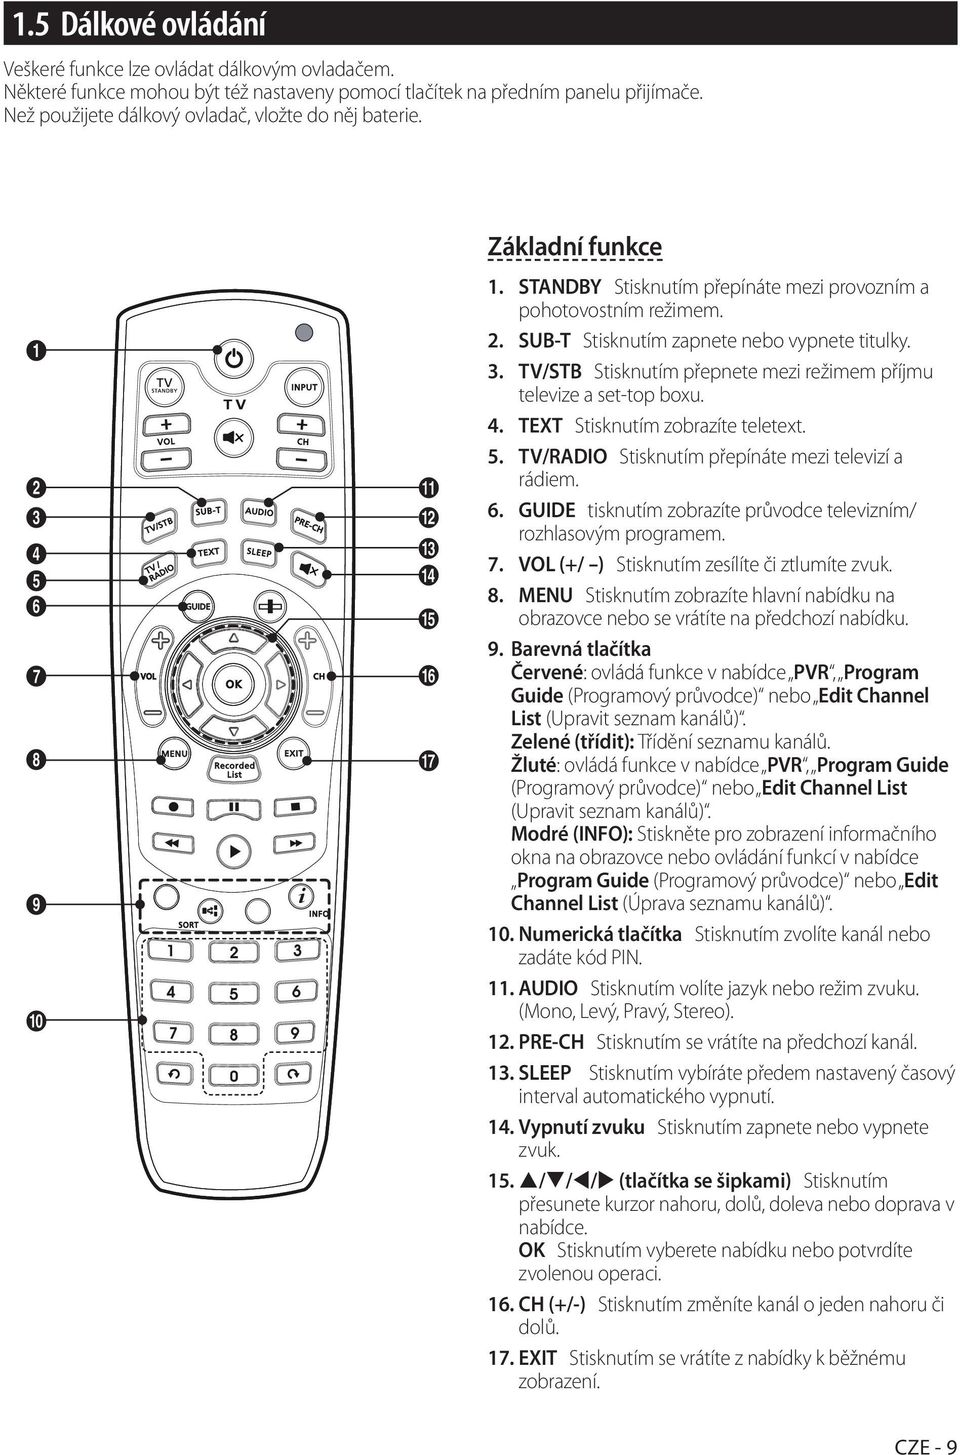 3. TV/STB Stisknutím přepnete mezi režimem příjmu televize a set-top boxu. 4. TEXT Stisknutím zobrazíte teletext. 5. TV/RADIO Stisknutím přepínáte mezi televizí a rádiem. 6.